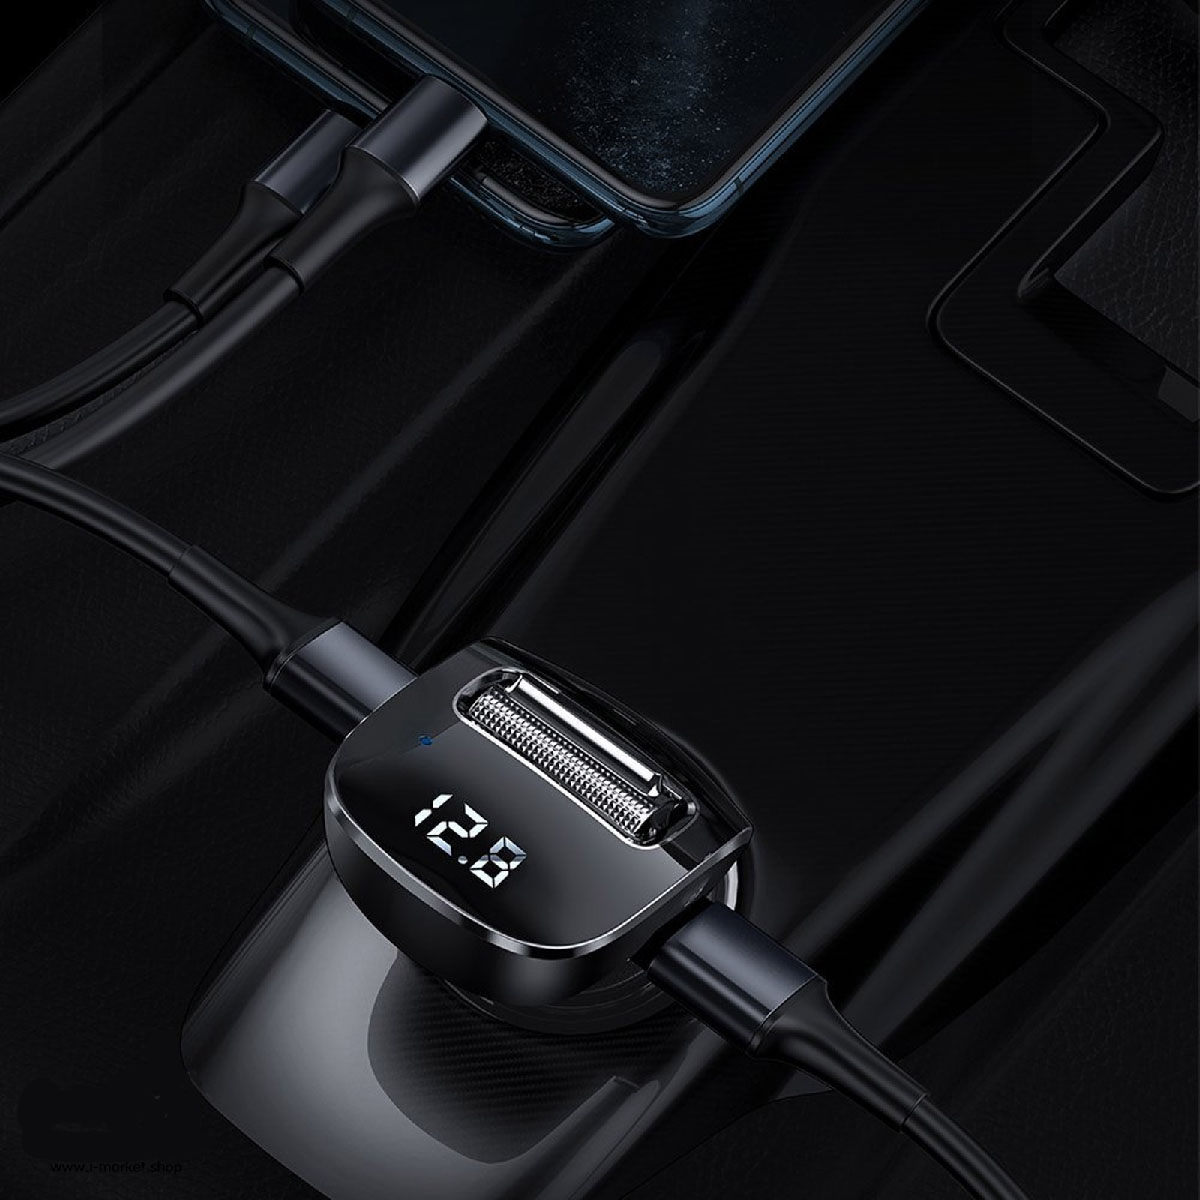 АЗУ (Автомобильное зарядное устройство) Baseus Streamer F40, AUX, Wireless MP3, Bluetooth аудио трансмиттер, цвет черный